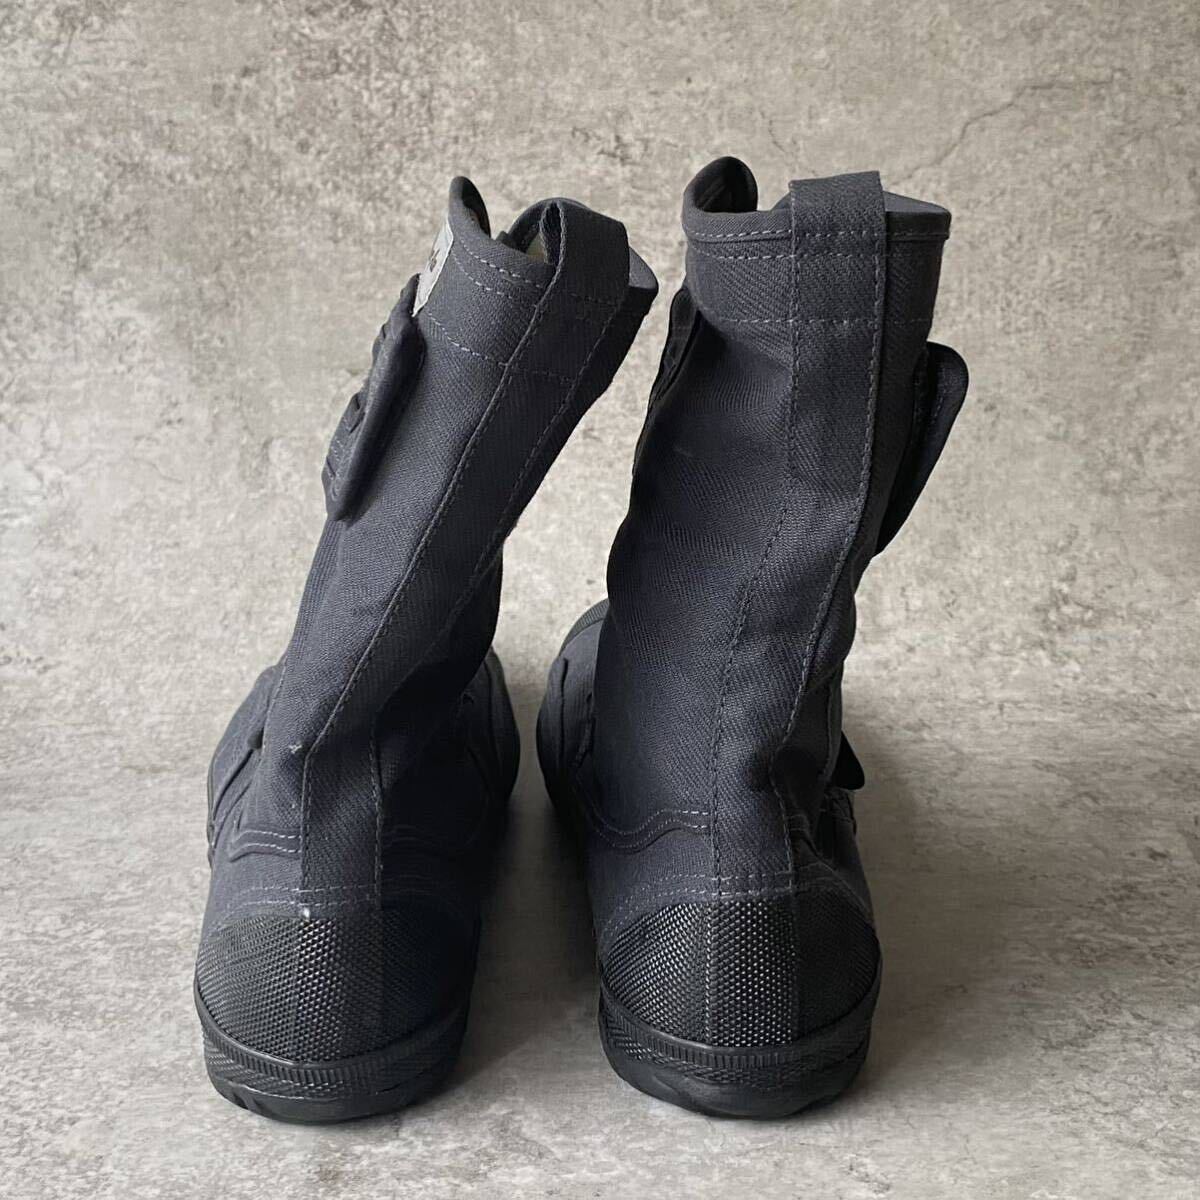  рабочая обувь мужской 25.5 энергия Ace высокий защита безопасность рабочая обувь пальцы ног медь сердцевина ввод текстильная застёжка ботинки - ikatto серый 